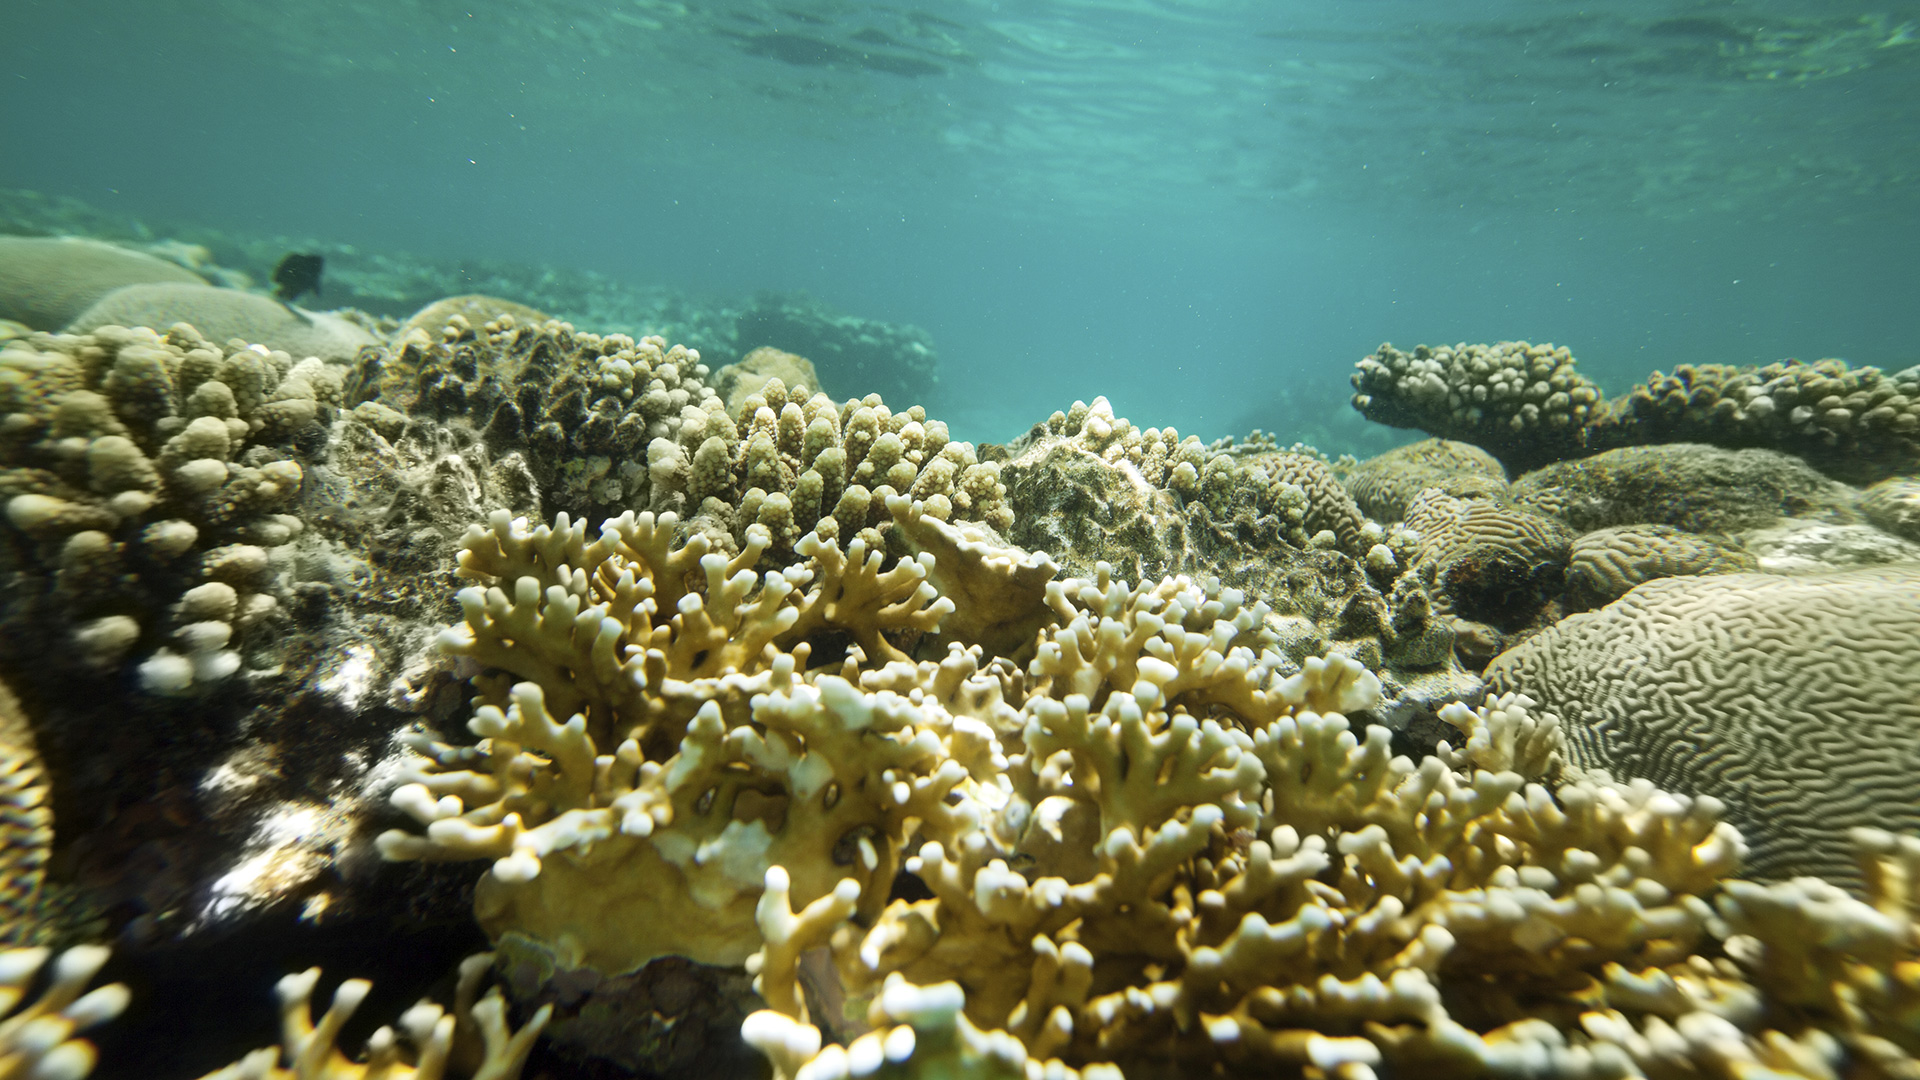 Ozeanversauerung bedroht Korallenriffe und Seesterne